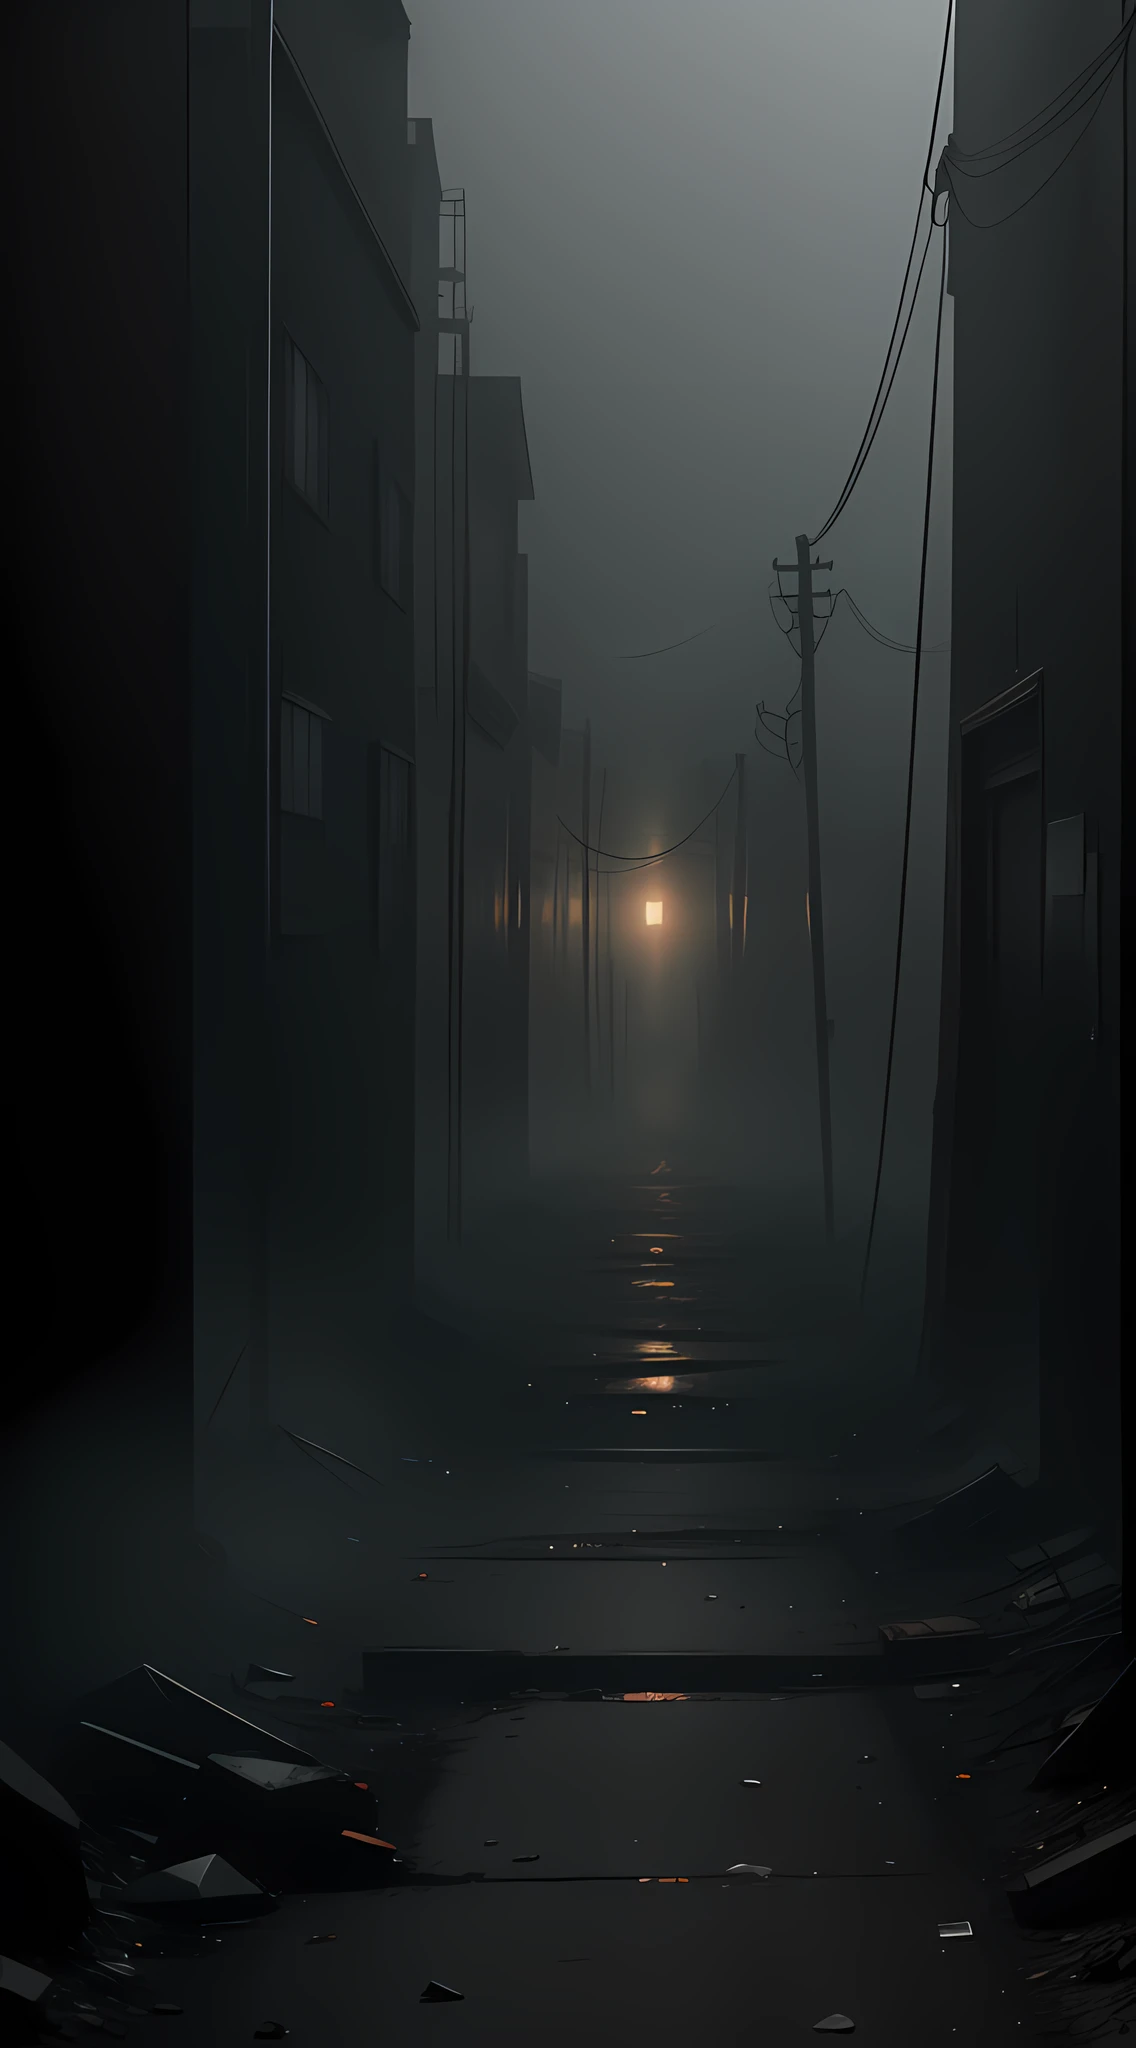 قم بإنشاء صورة احترافية بدقة 8K تلتقط الجوهر المزعج ل Silent Hill في Centralia. إضافة ضباب كثيف وعناصر من الصدأ والتعفن لخلق جو قمعي. استخدم زوايا الكاميرا المشوهة والإطارات غير العادية لنقل الشعور بالارتباك والرعب المميز لعالم Silent Hill